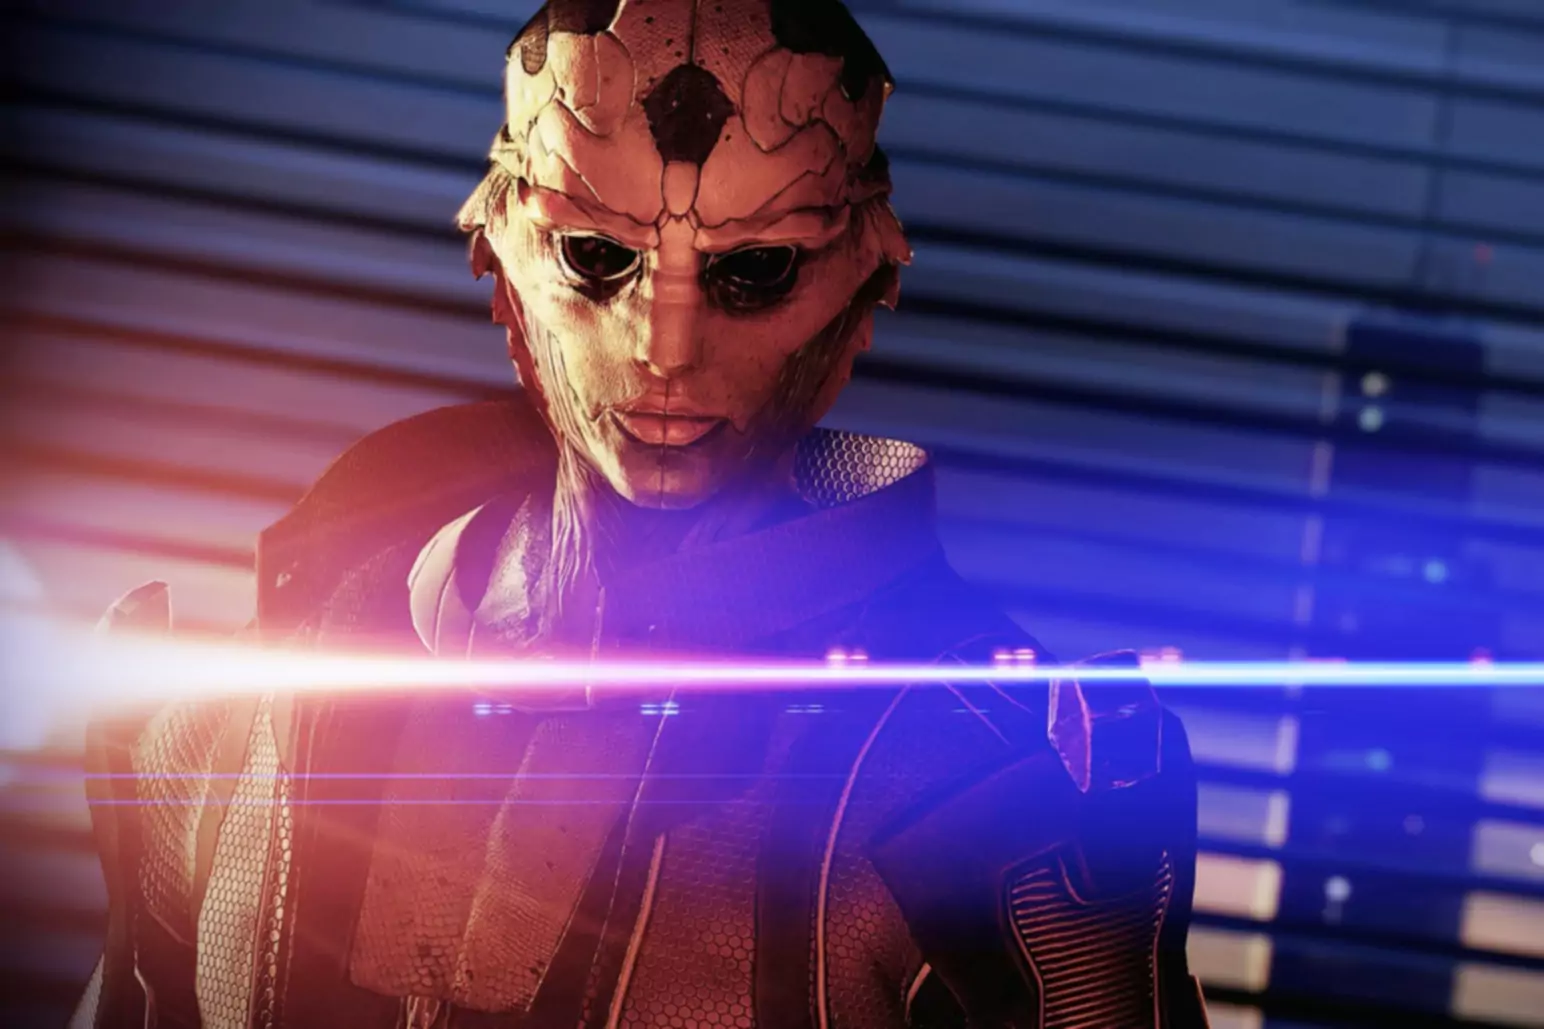 Skærmbillede af Mass Effect-spillet med en figur med maske, der er oplyst af blåt og orange lys